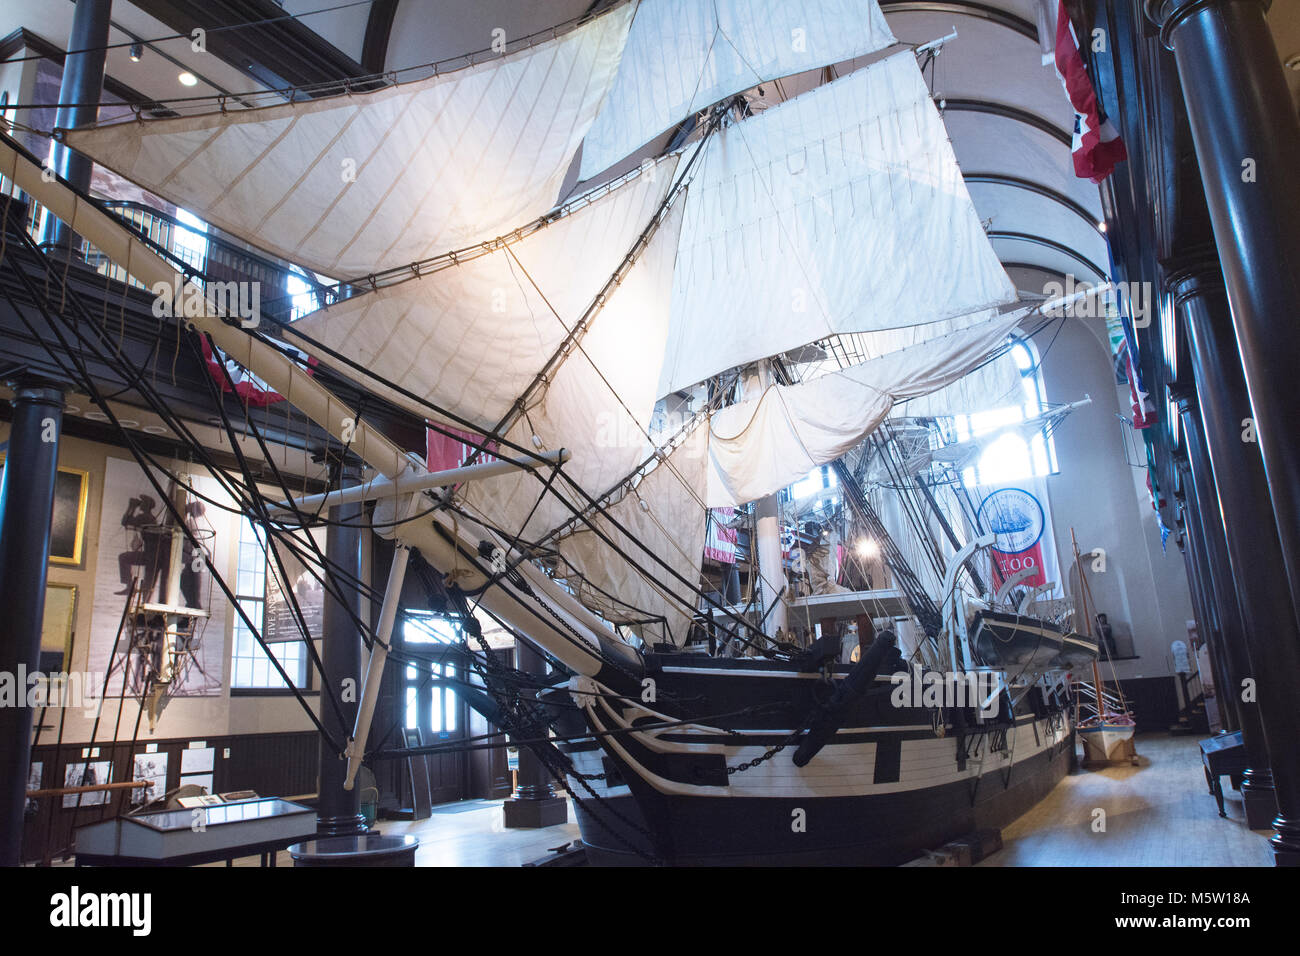 Una panoramica del 'Lagoda' una mezza scala modello di una nave baleniera a New Bedford Whaling Museum. Foto Stock